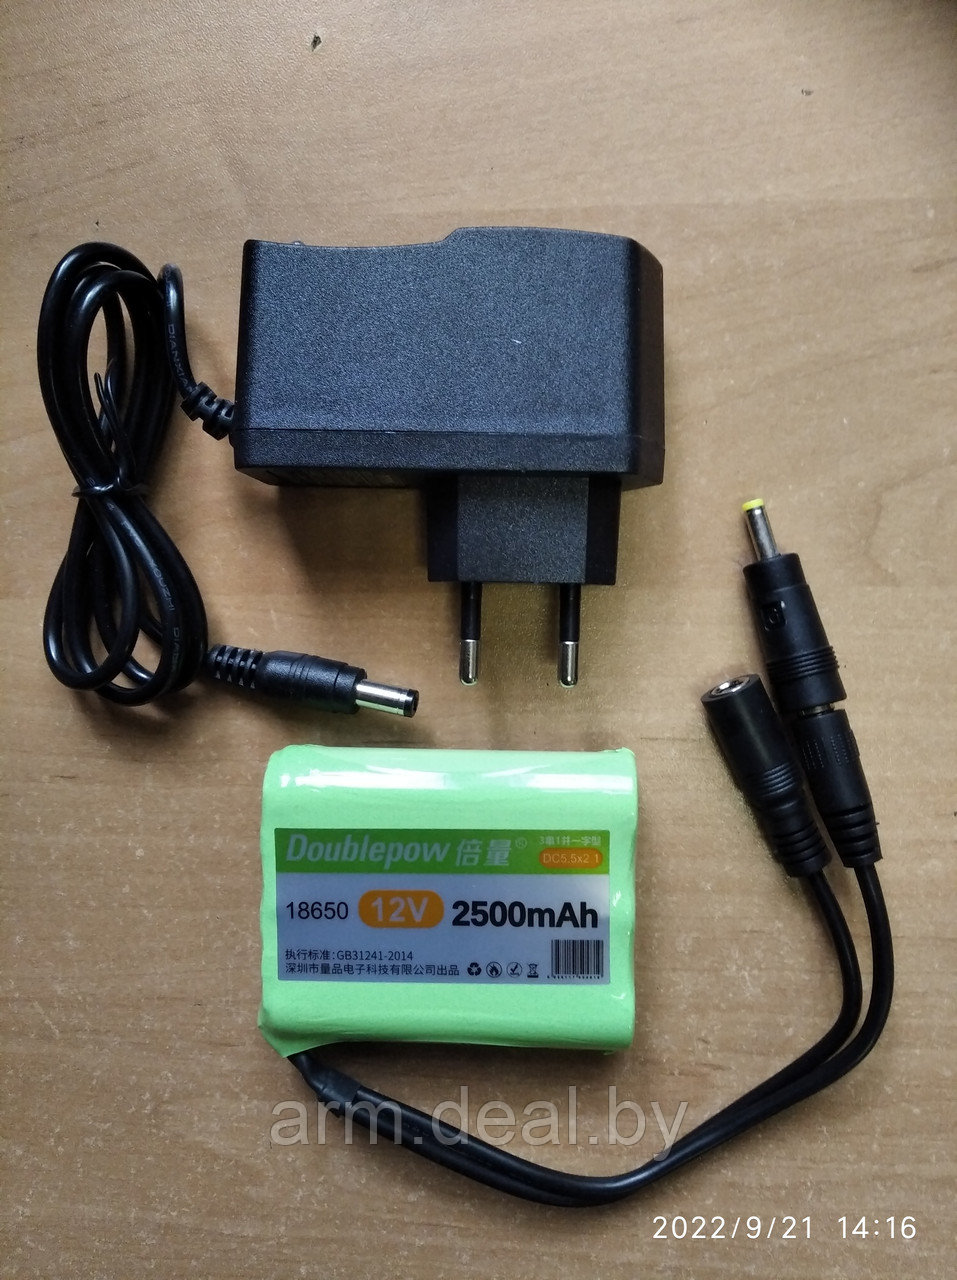 Литий-ионный аккумулятор 12V 2500mAh, для фотоловушек и электроманков и др.